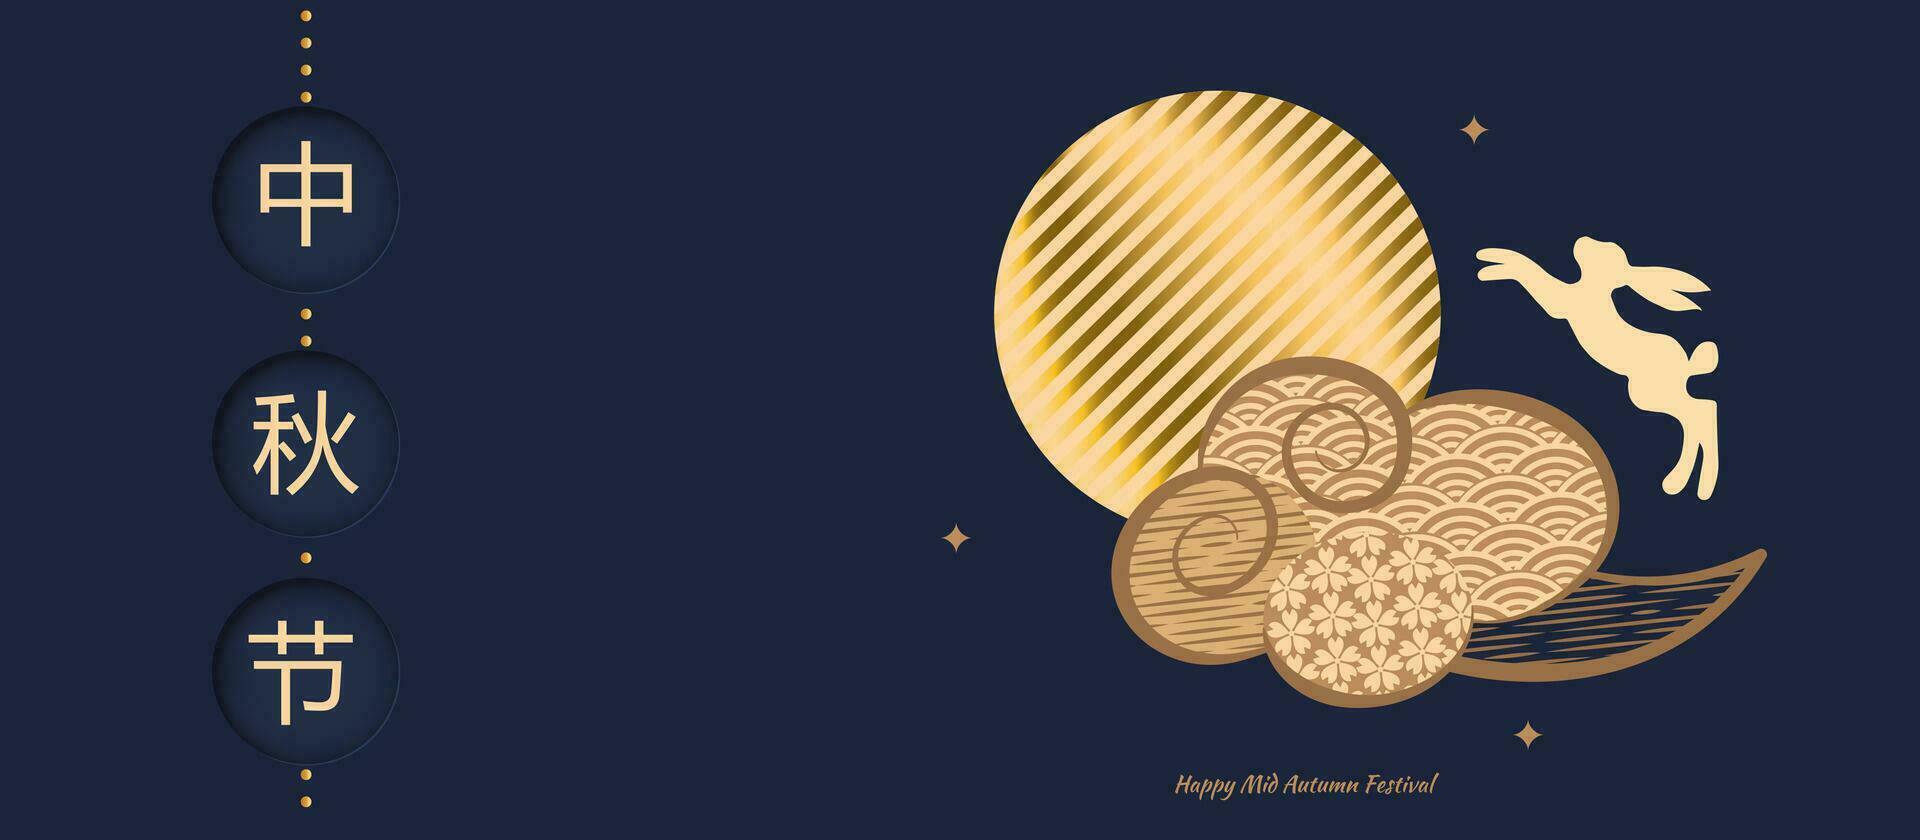 Banner Design mit traditionell Chinesisch voll Mond Kreise, Springen Hasen unter das Mond. stilisiert Wolke. Übersetzung von Chinesisch - - mitte Herbst Festival. Vektor Illustration